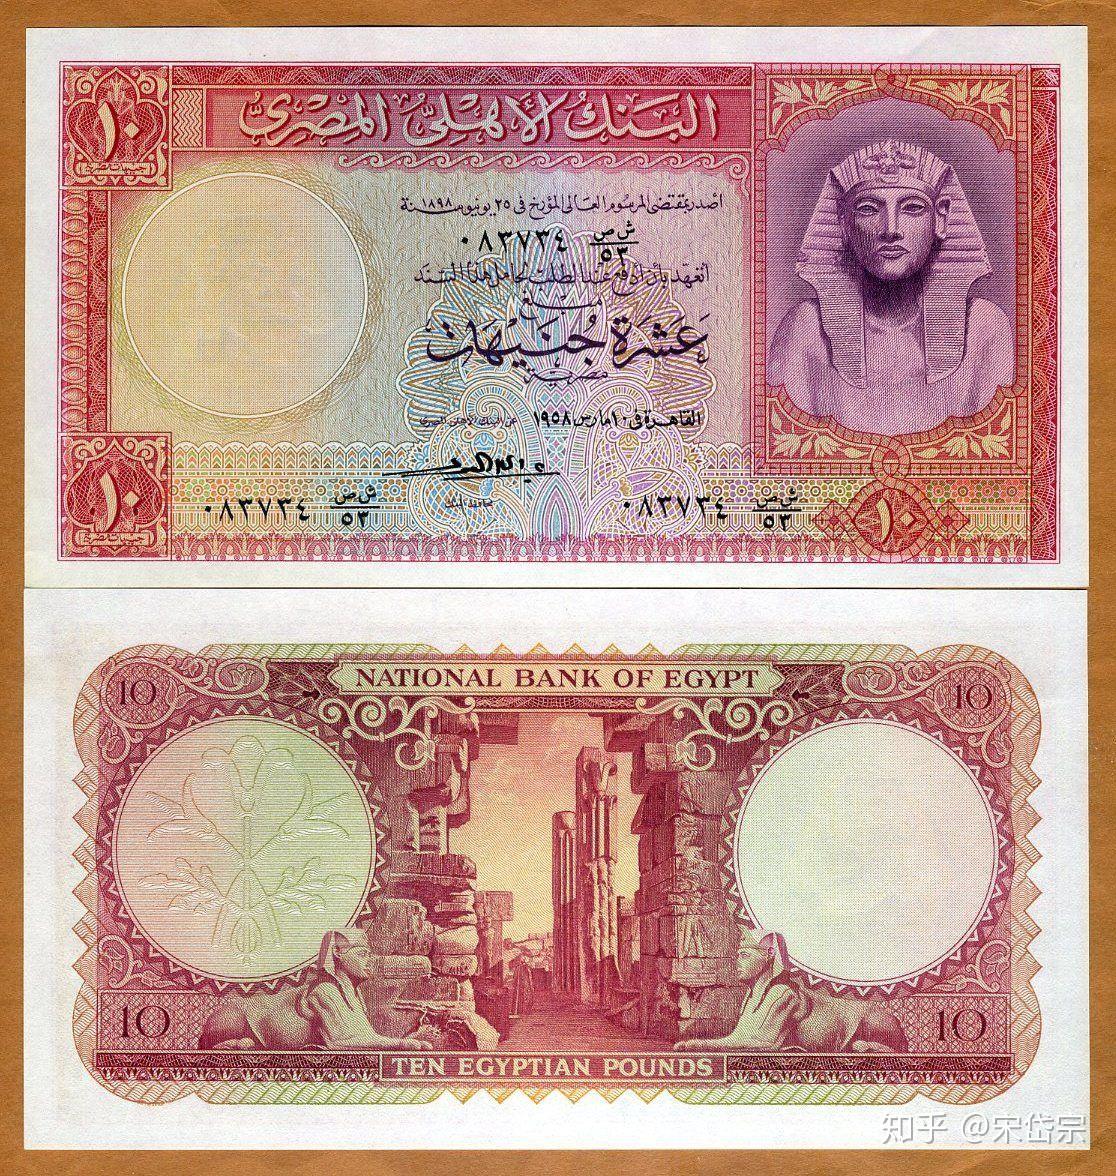 文明的嬗变——埃及1978年100镑 